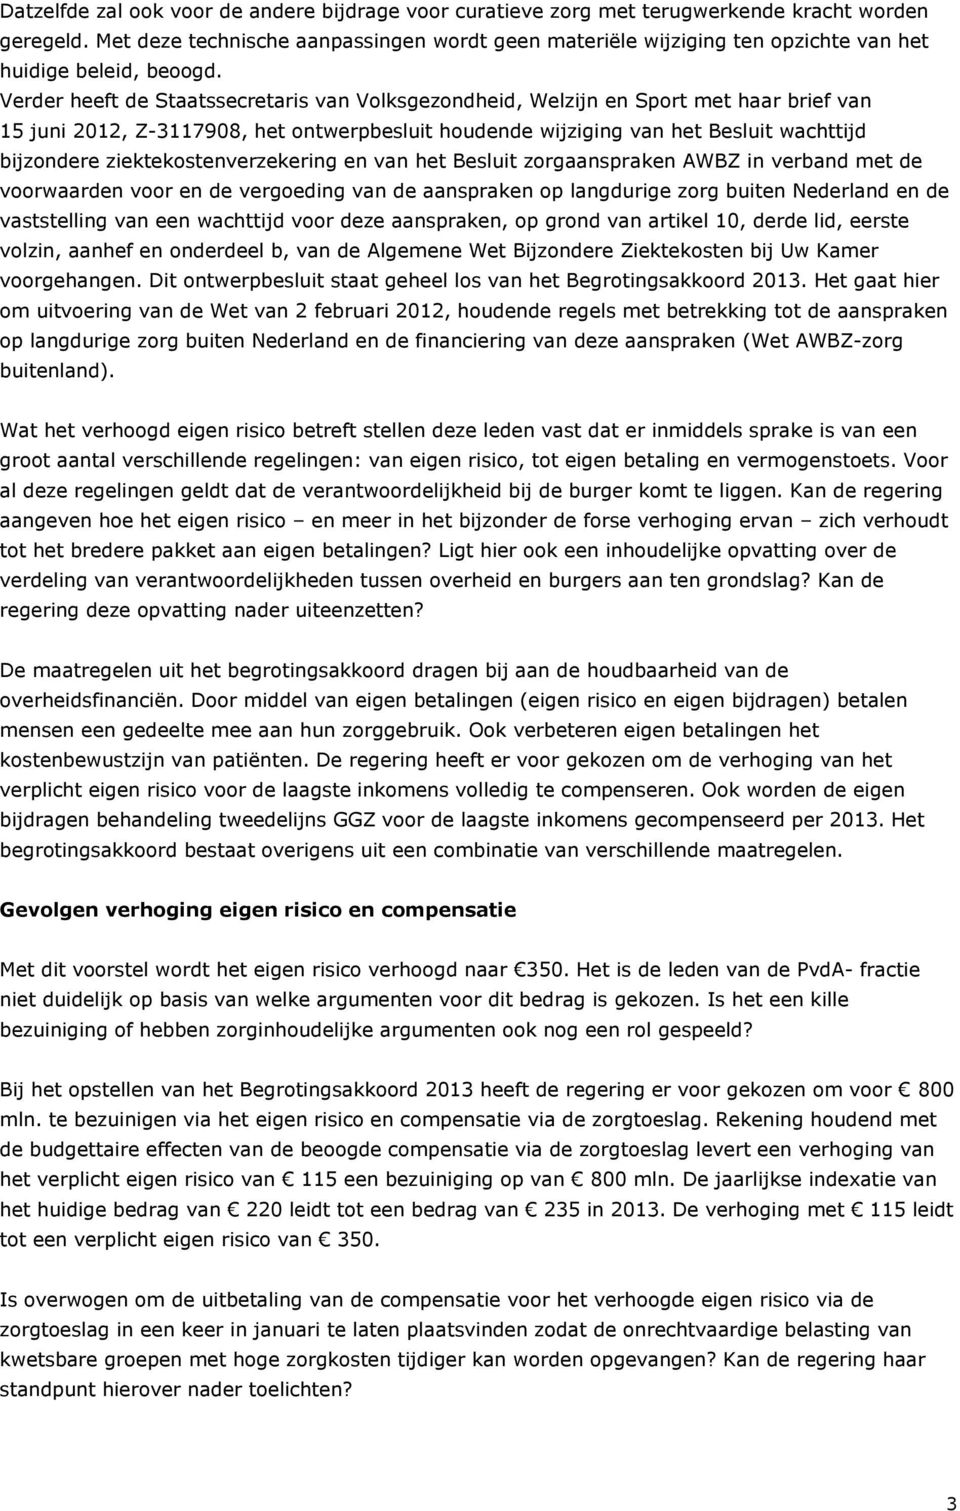 Verder heeft de Staatssecretaris van Volksgezondheid, Welzijn en Sport met haar brief van 15 juni 2012, Z-3117908, het ontwerpbesluit houdende wijziging van het Besluit wachttijd bijzondere